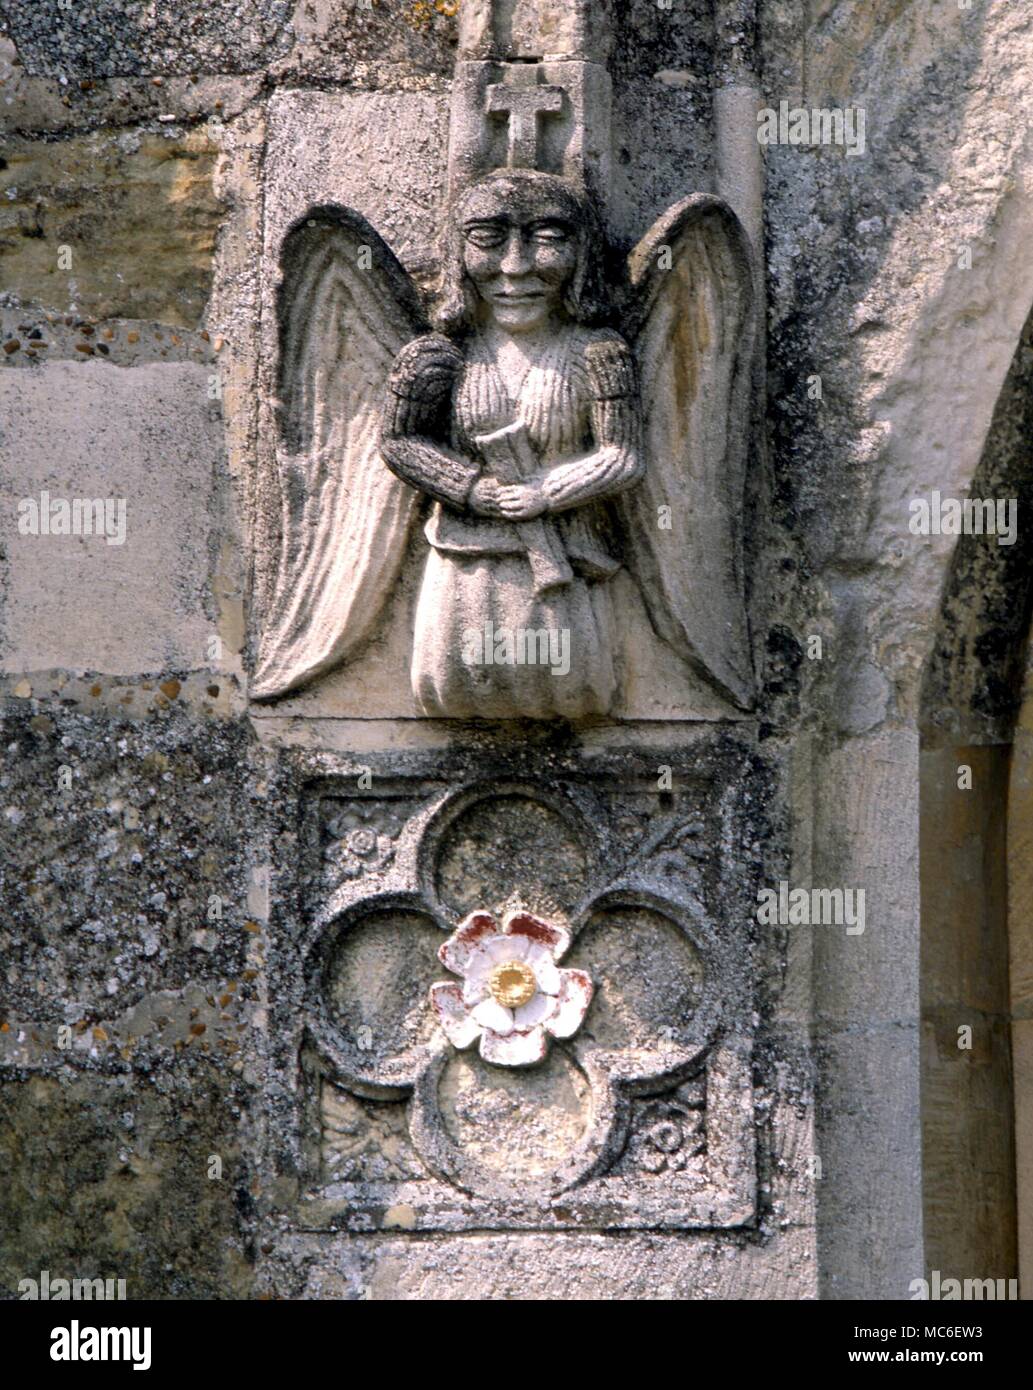 Engel - Engel mit Fackel des Lebens, und symbolischen Rose, auf der westlichen Tür von Winchelsea Kirche Stockfoto